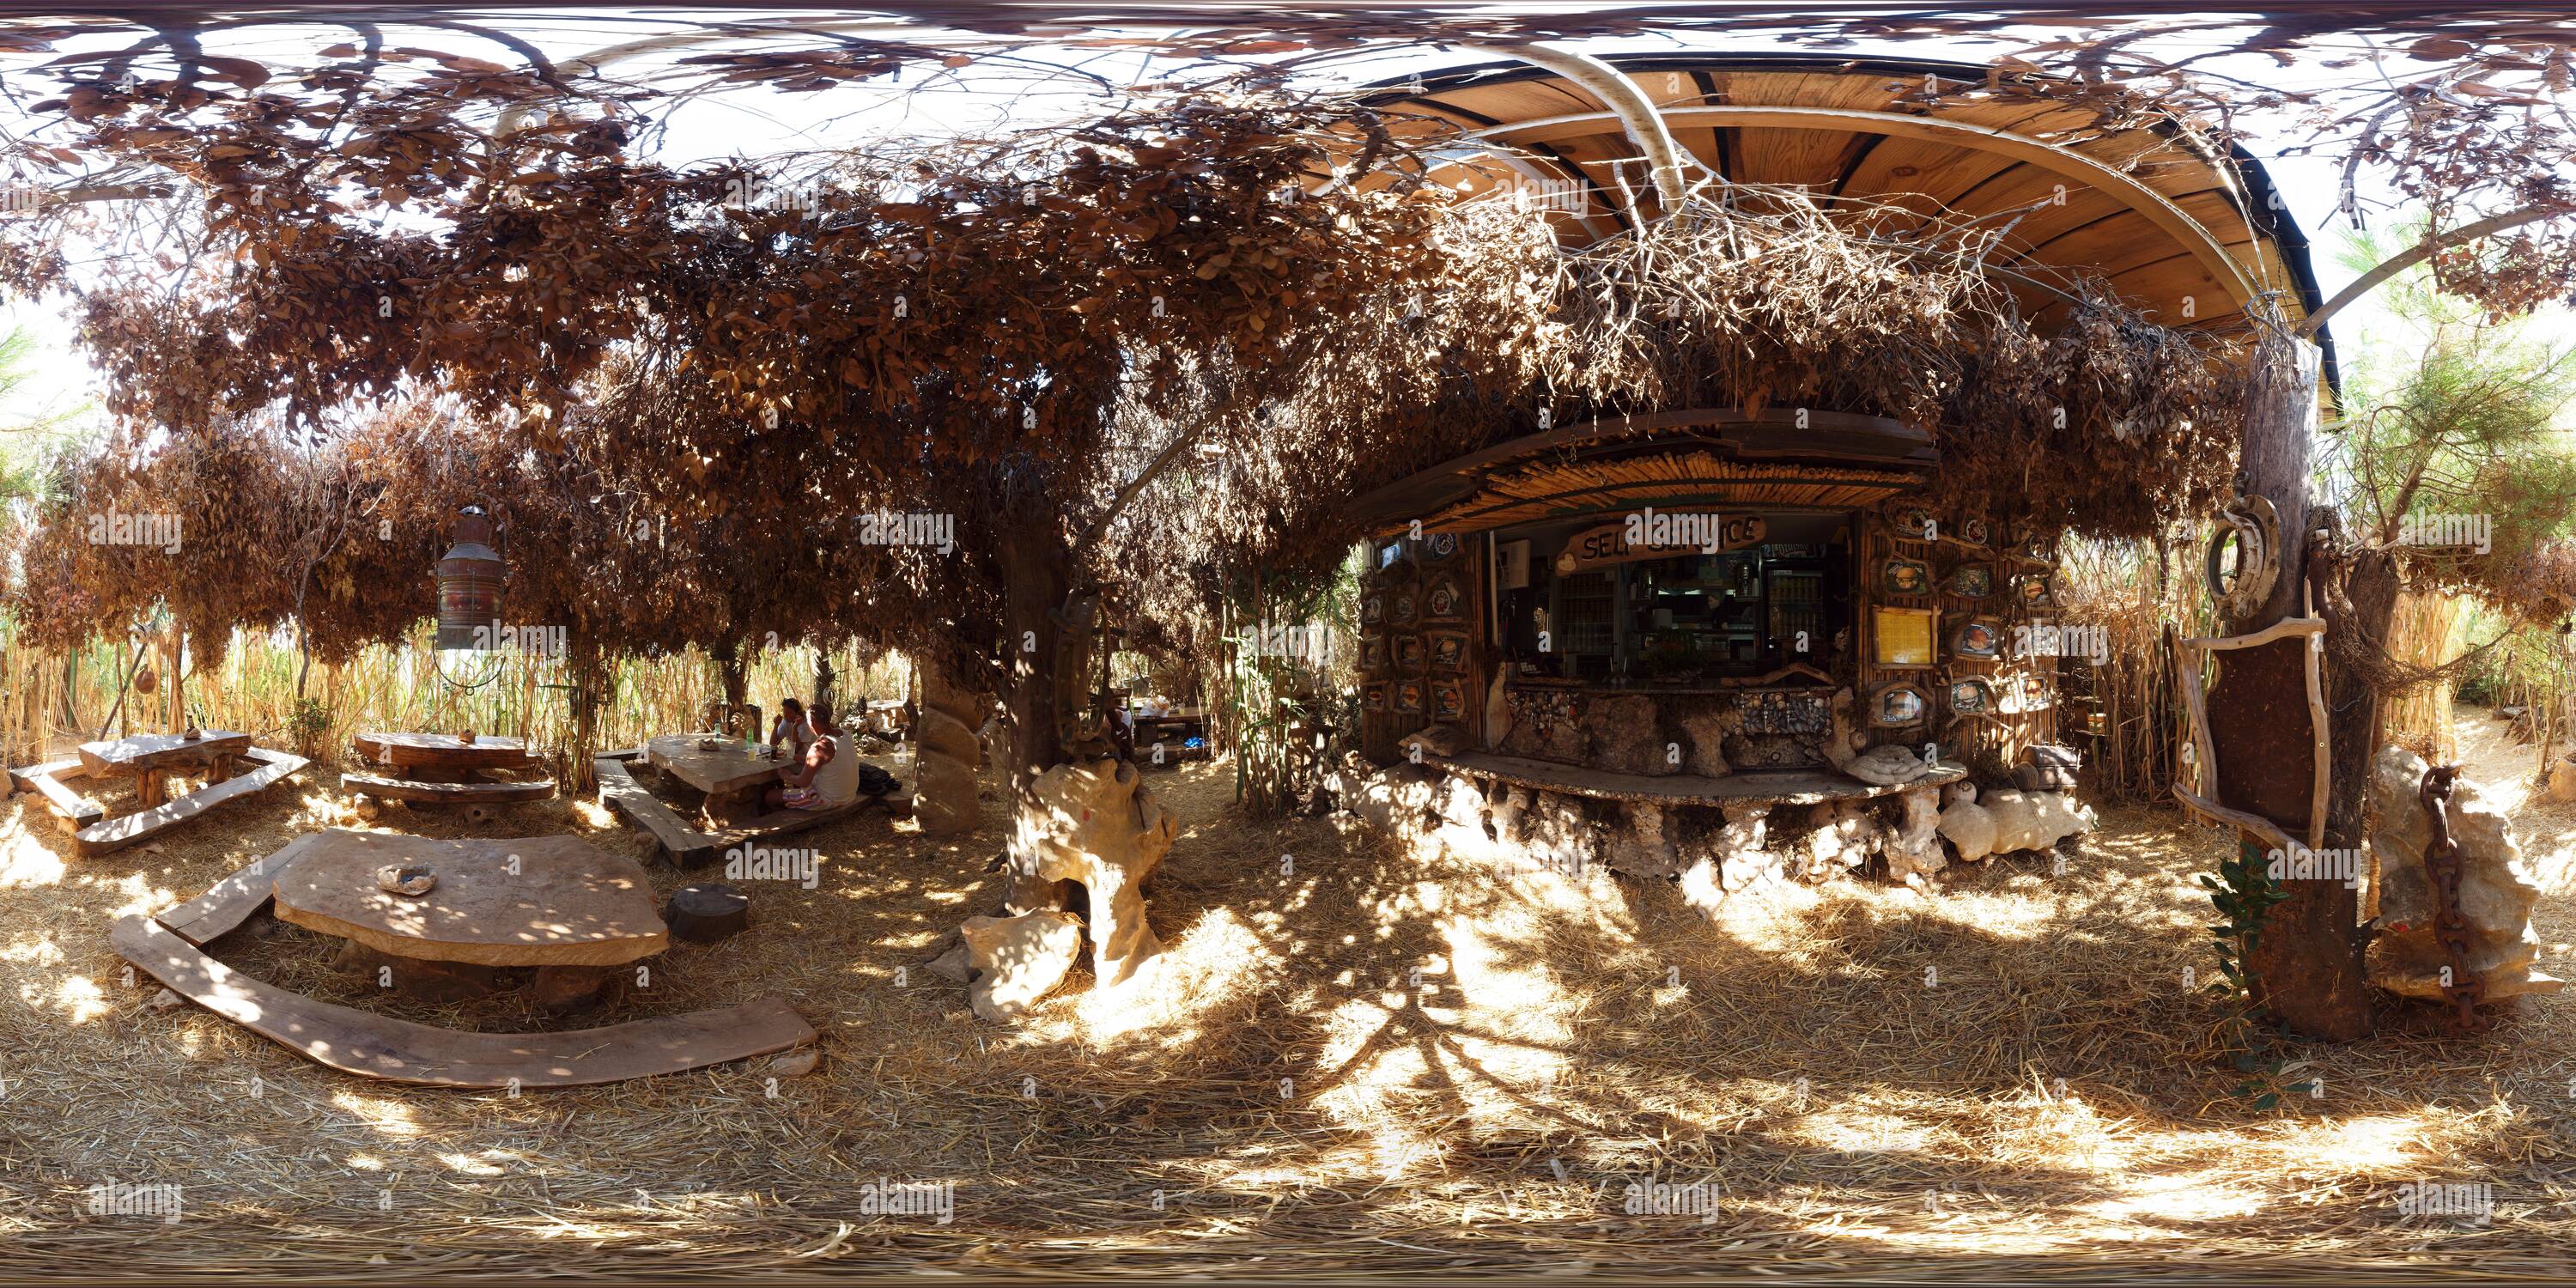 360 degree panoramic view of The Safari Bar